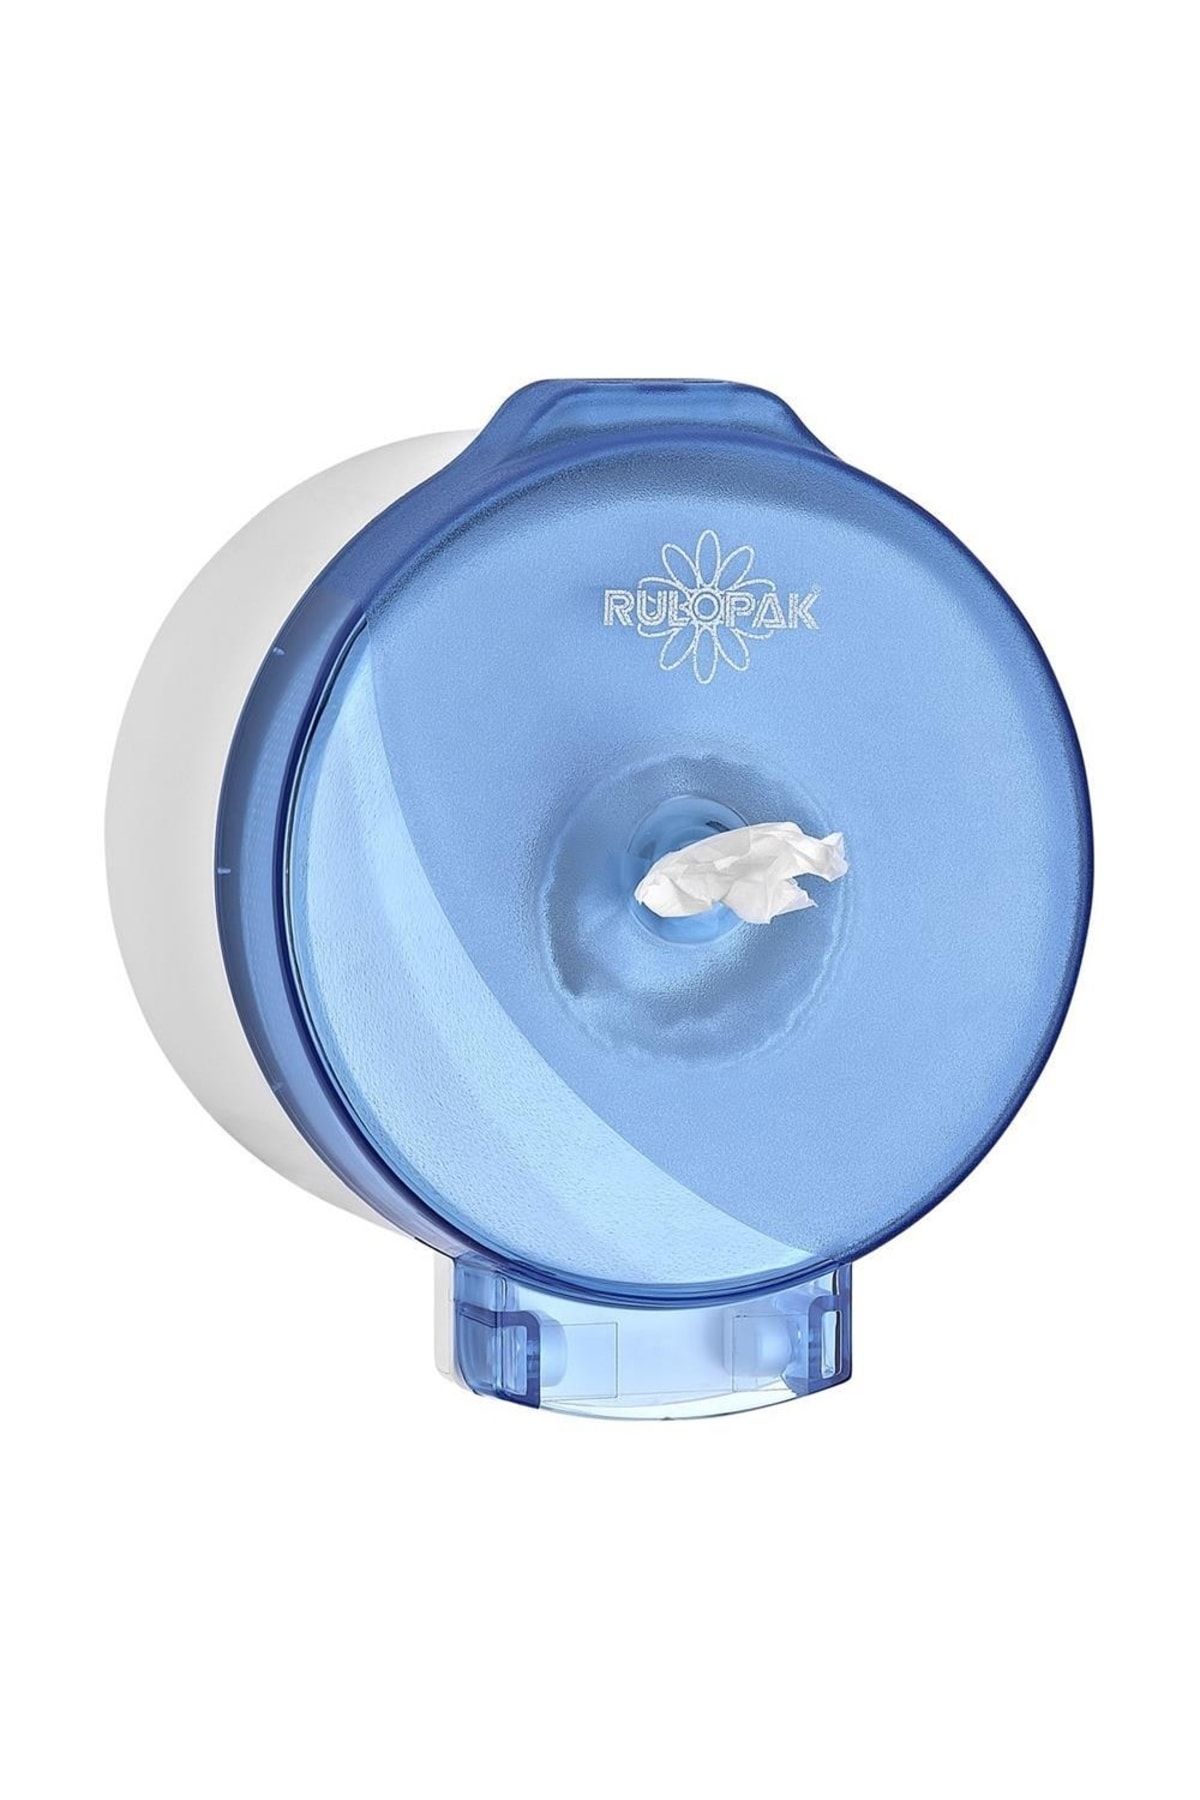 Rulopak Modern Mini Cimri Içten Çekmeli Tuvalet Kağıdı Dispenseri Transparan Mavi